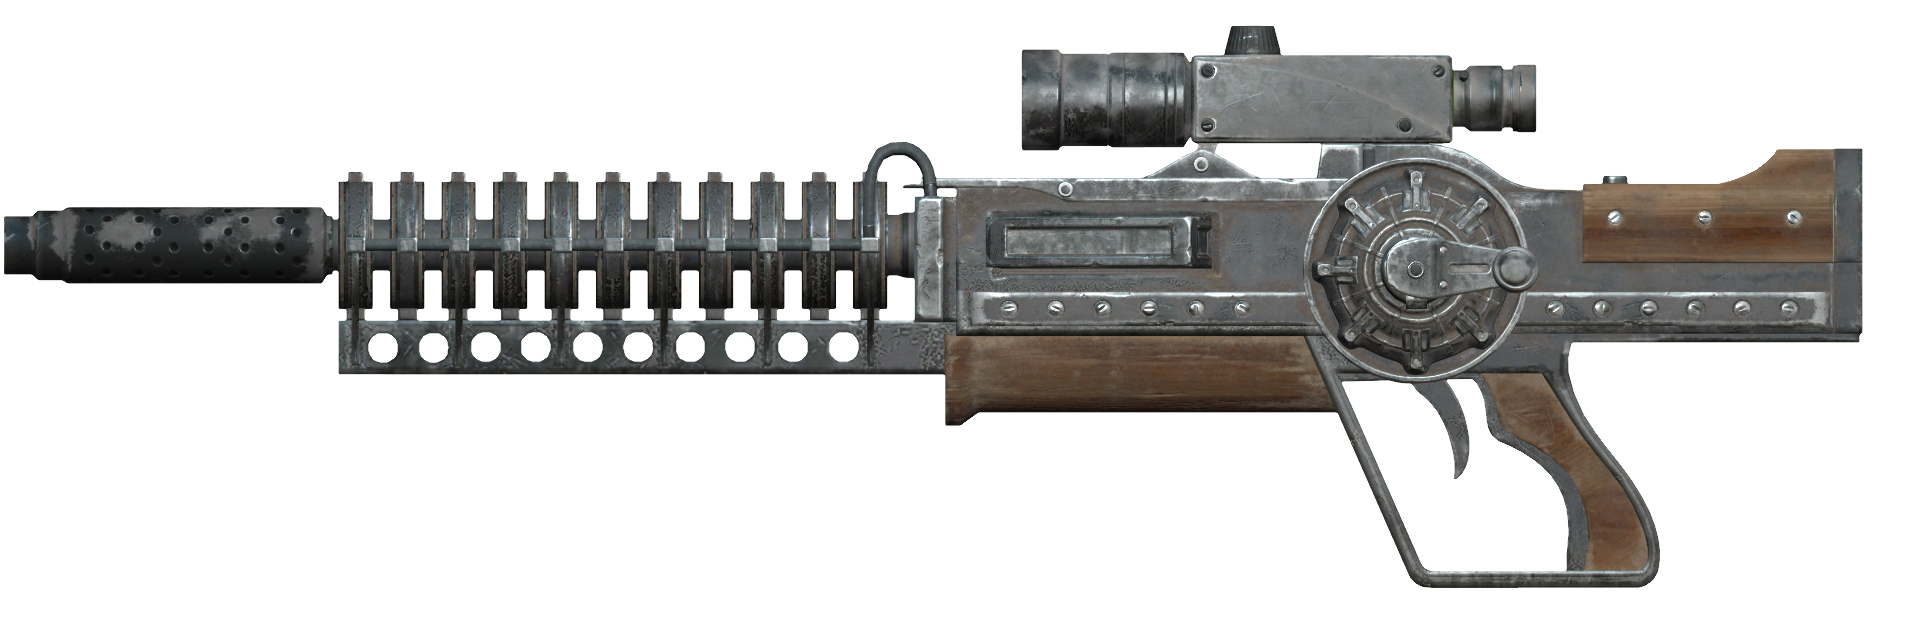 прототип винтовки гаусса fallout 4 фото 81